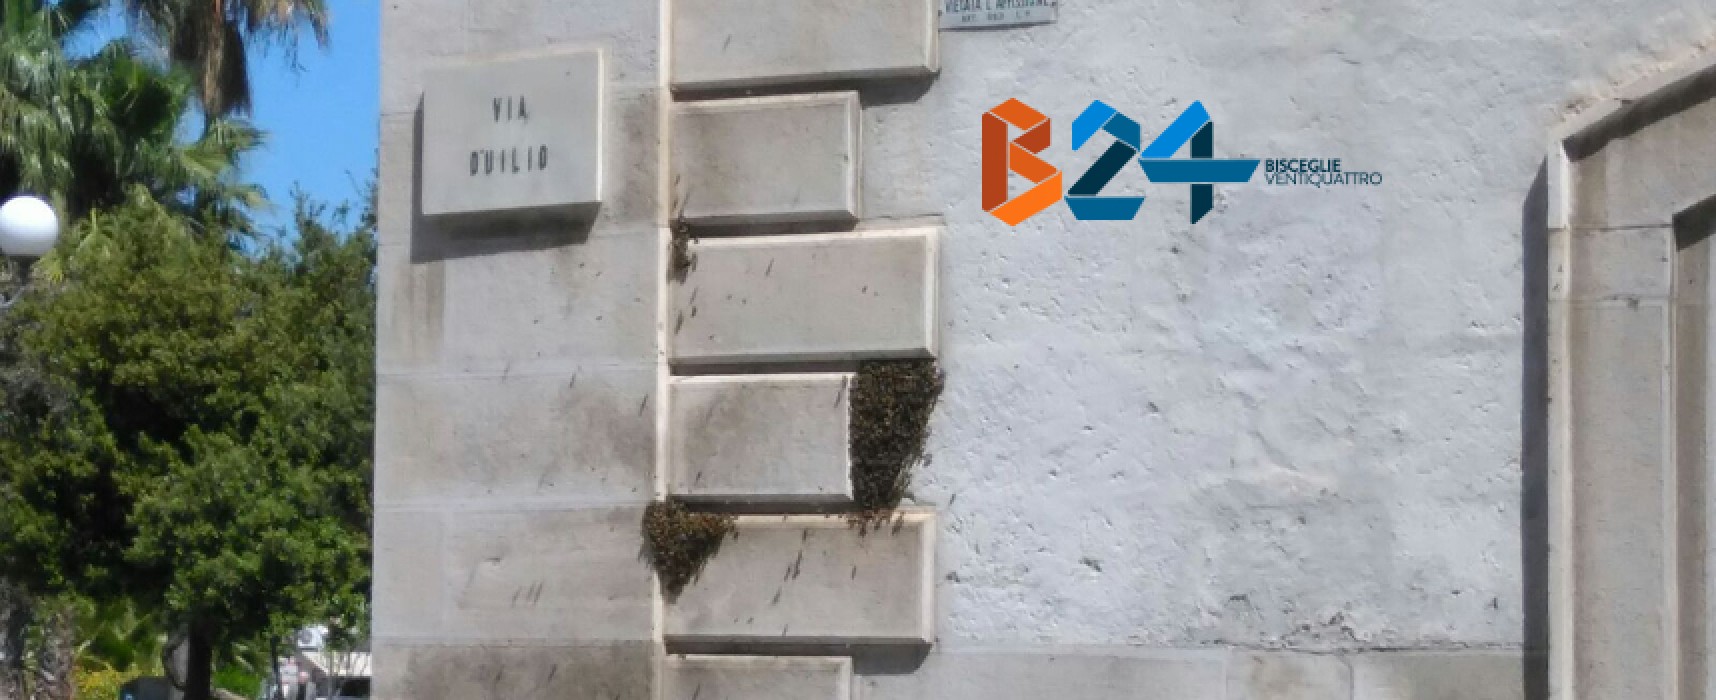 Grosso sciame di api in pieno centro sulla parete di uno stabile / FOTO